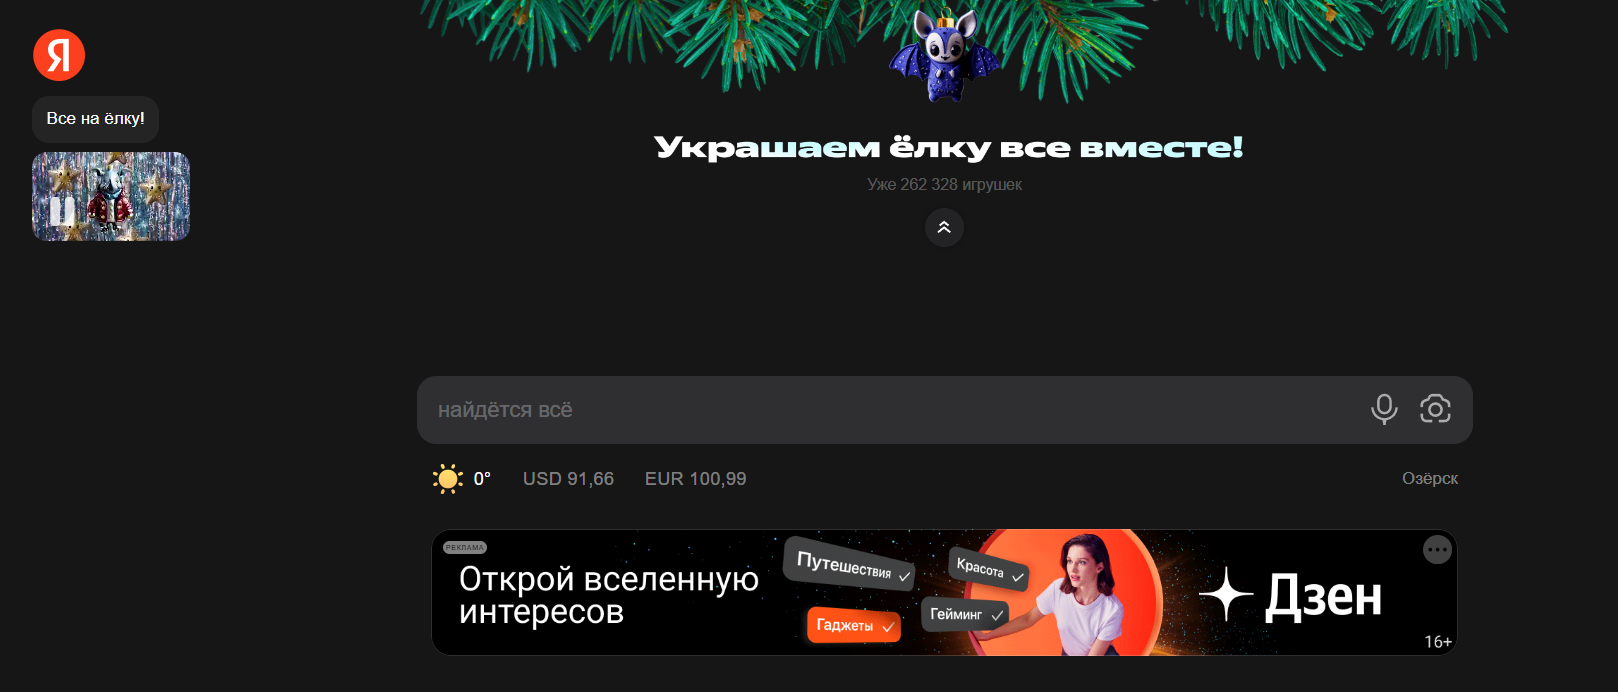 Новогоднее оформления Яндекс